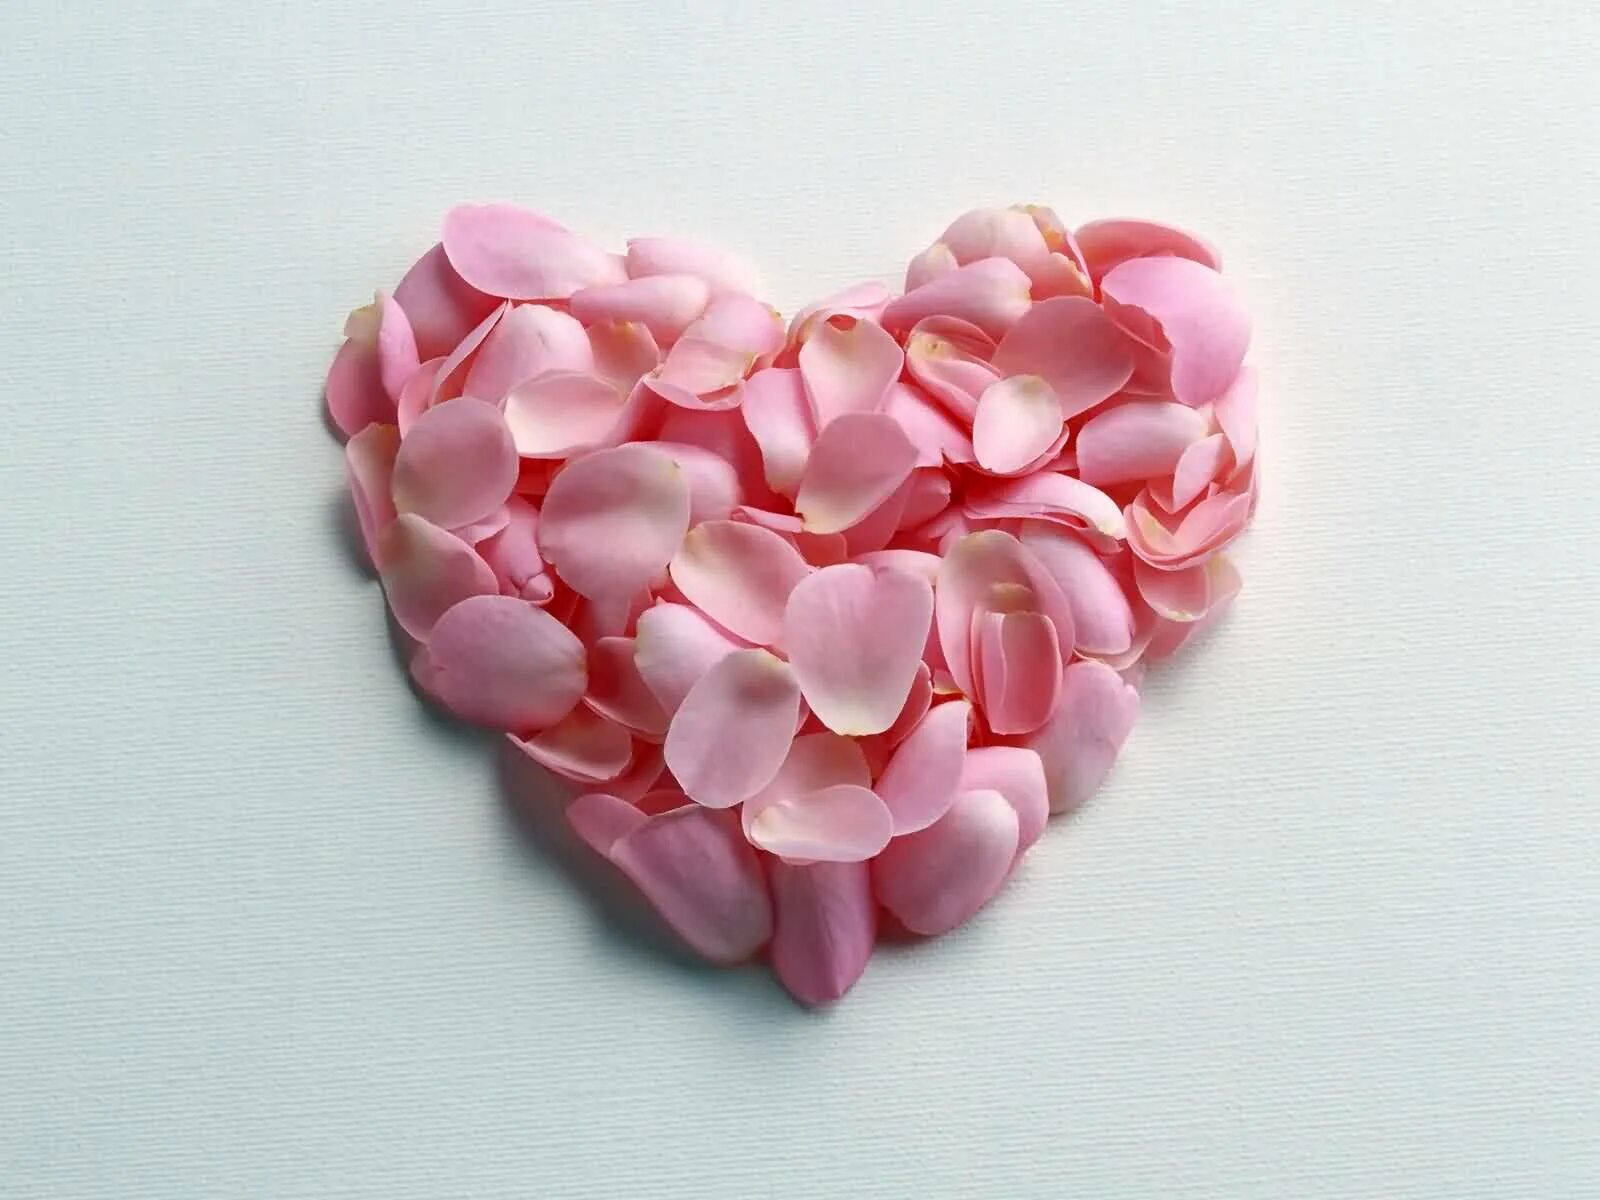 Нежно лепестками роз. Красивое сердце. Цветы сердечки. Сердечко из цветов. Розовые лепестки.